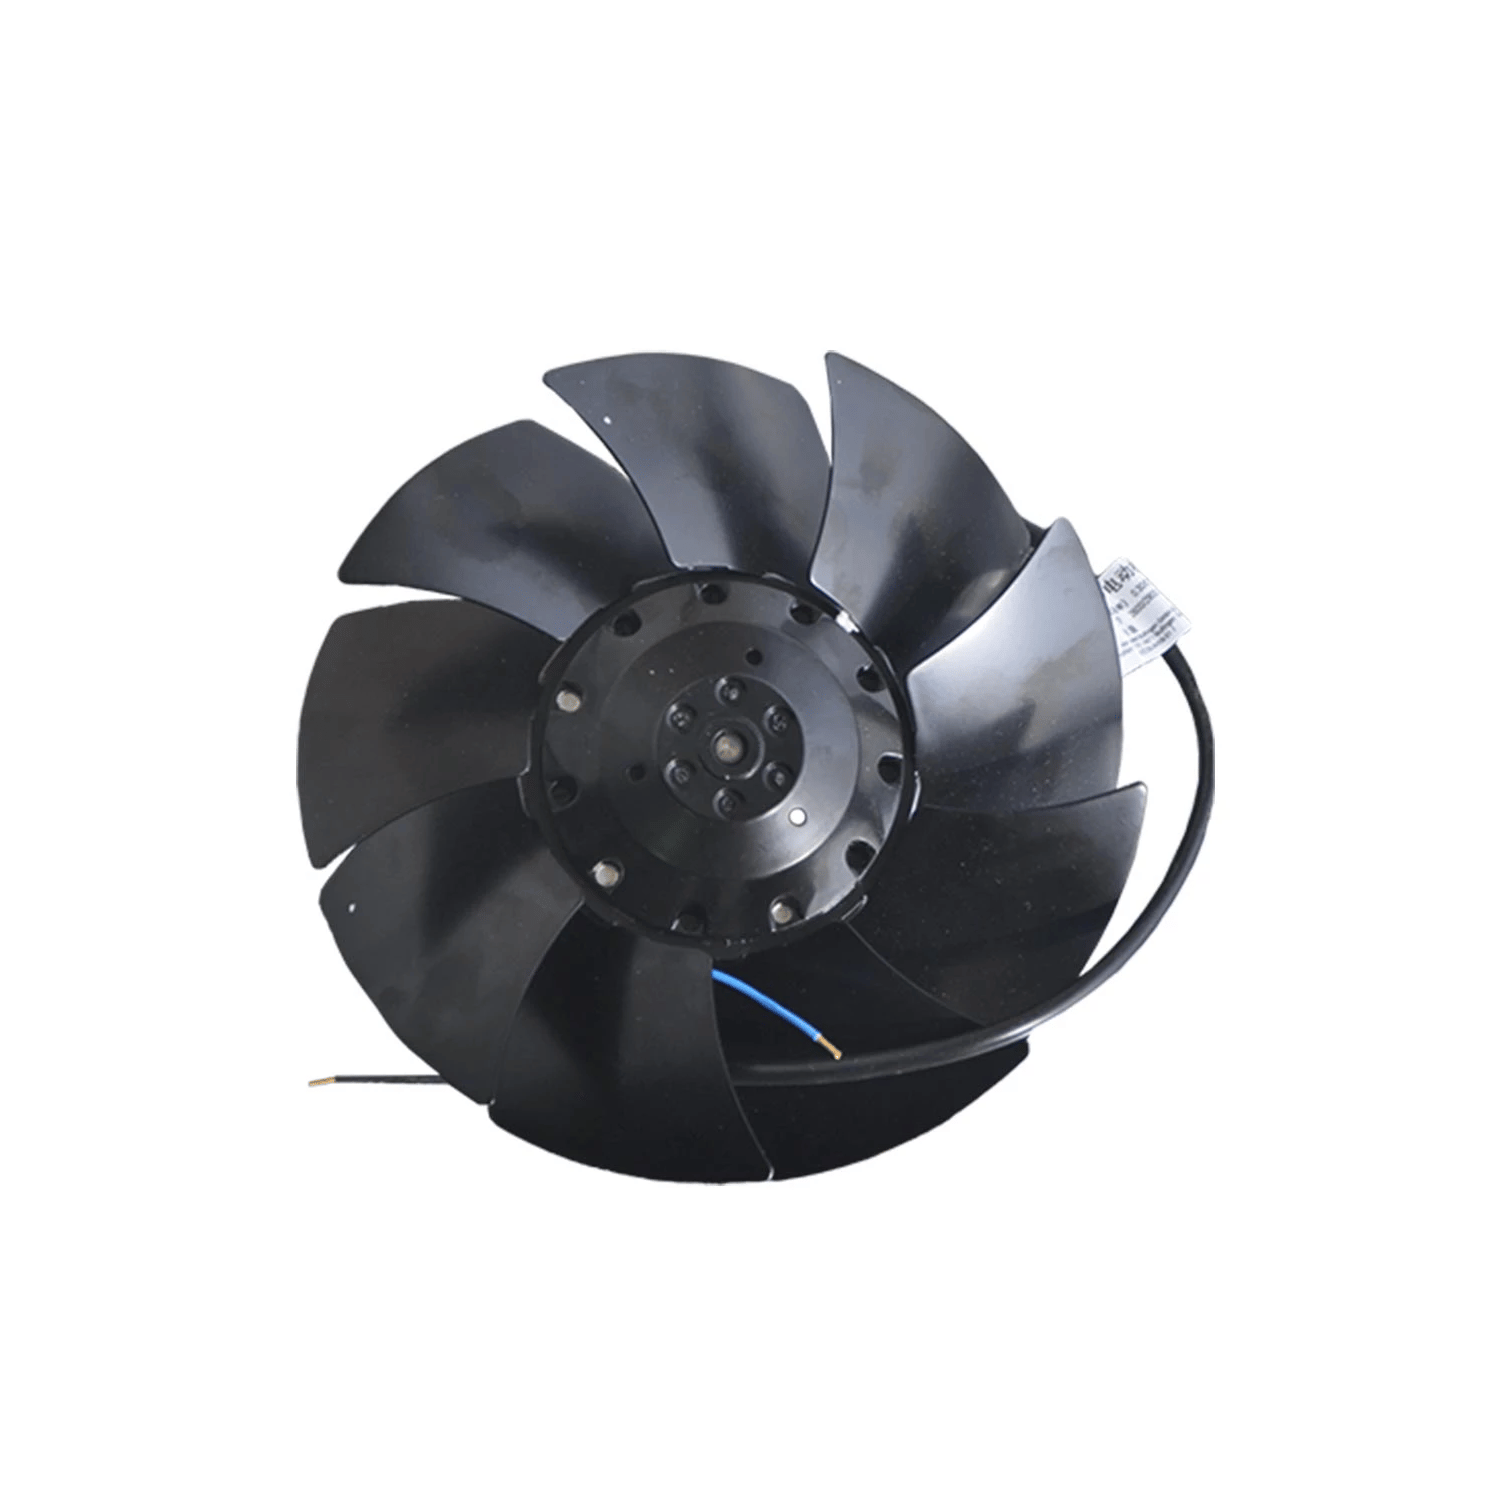 Suction fan EBM PAPST A2E200-AH38-01, d = 200 mm 230 V 60 Hz 78 W 2600 rpm